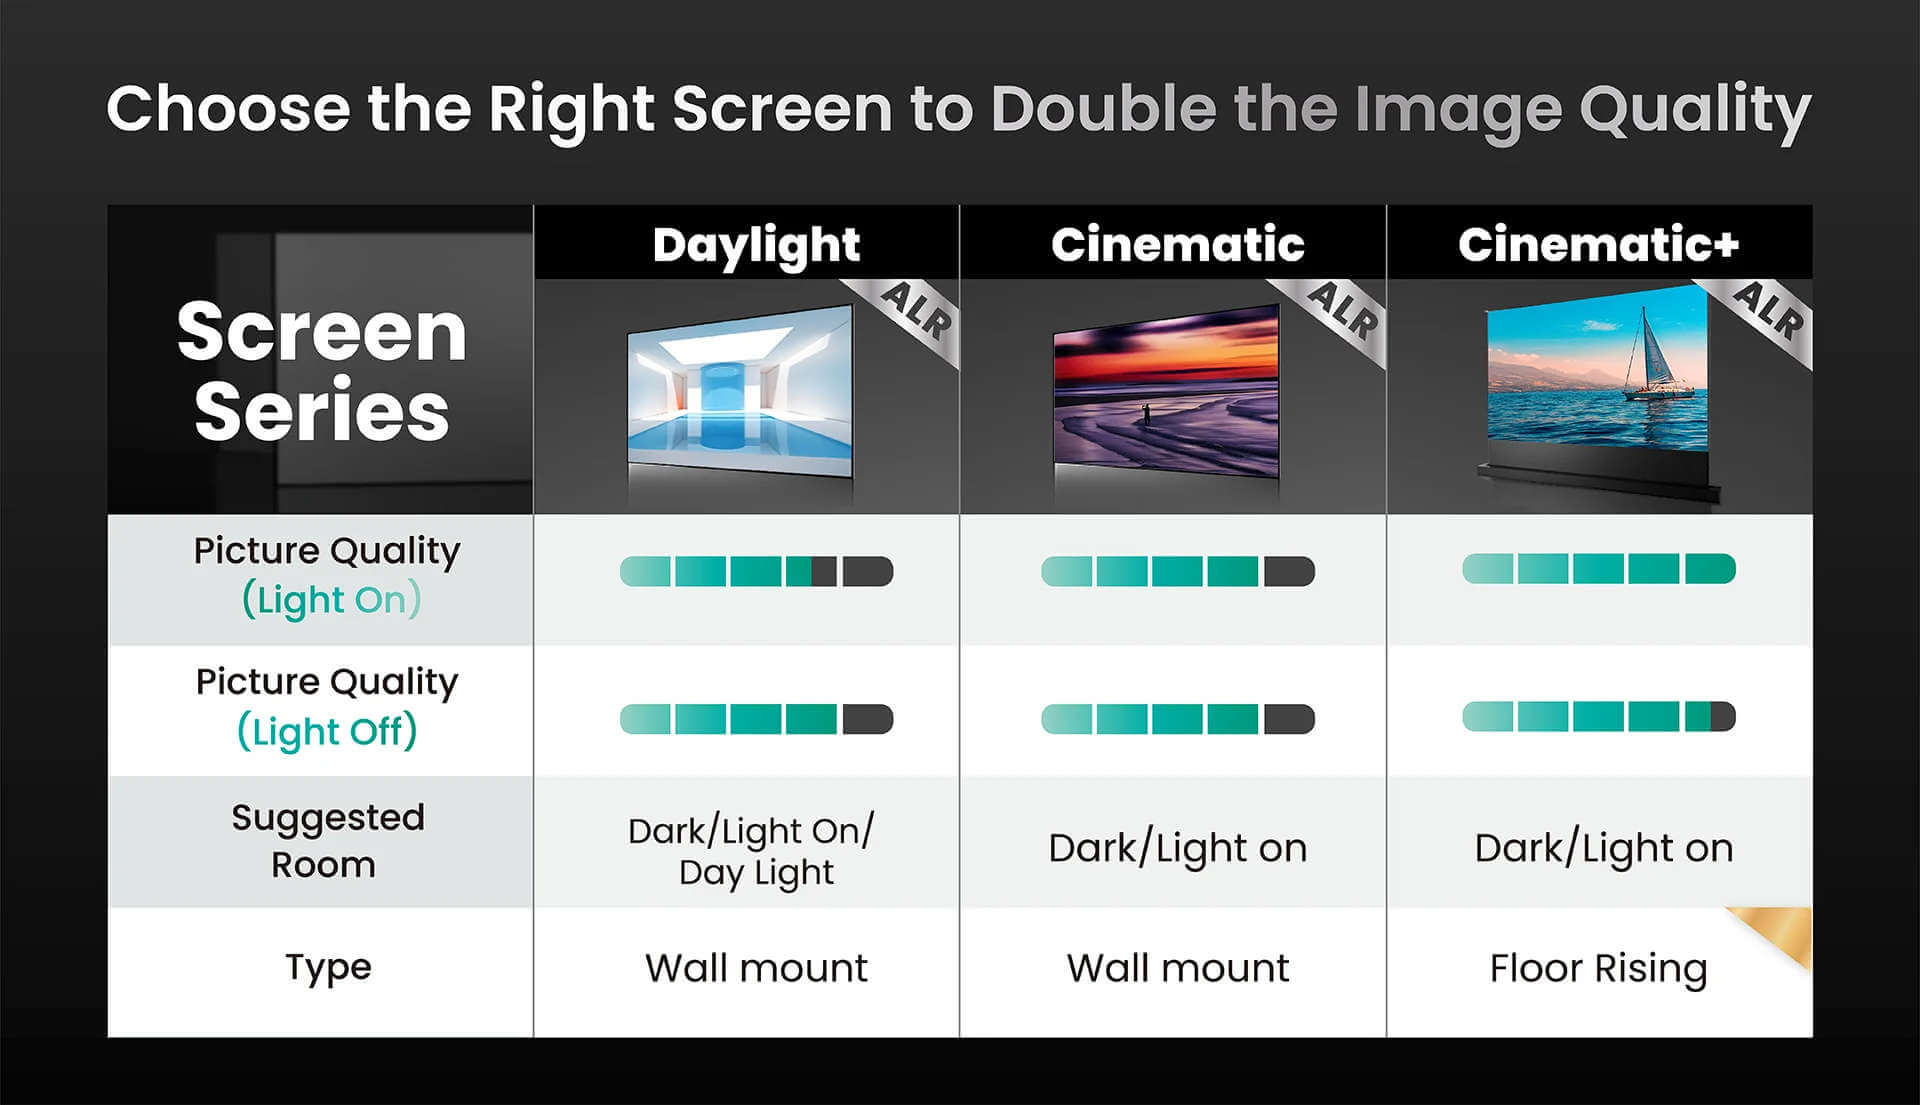 Awol Vision ALR Screens | Choisir le bon écran pour doubler la qualité de l'image | Comparatif des différents écrans ALR Awol Vision